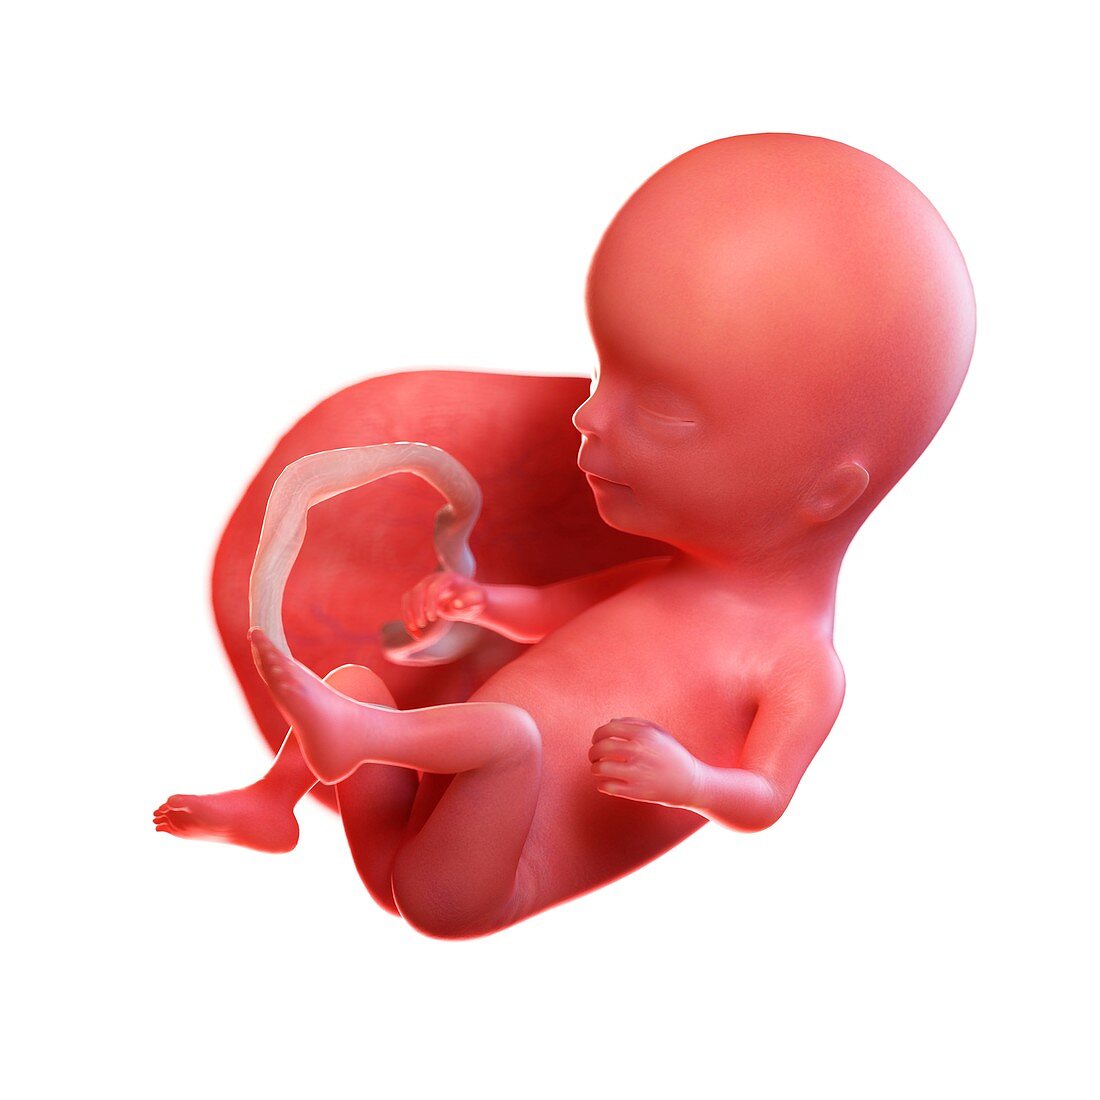 Human foetus age 14 weeks, illustration